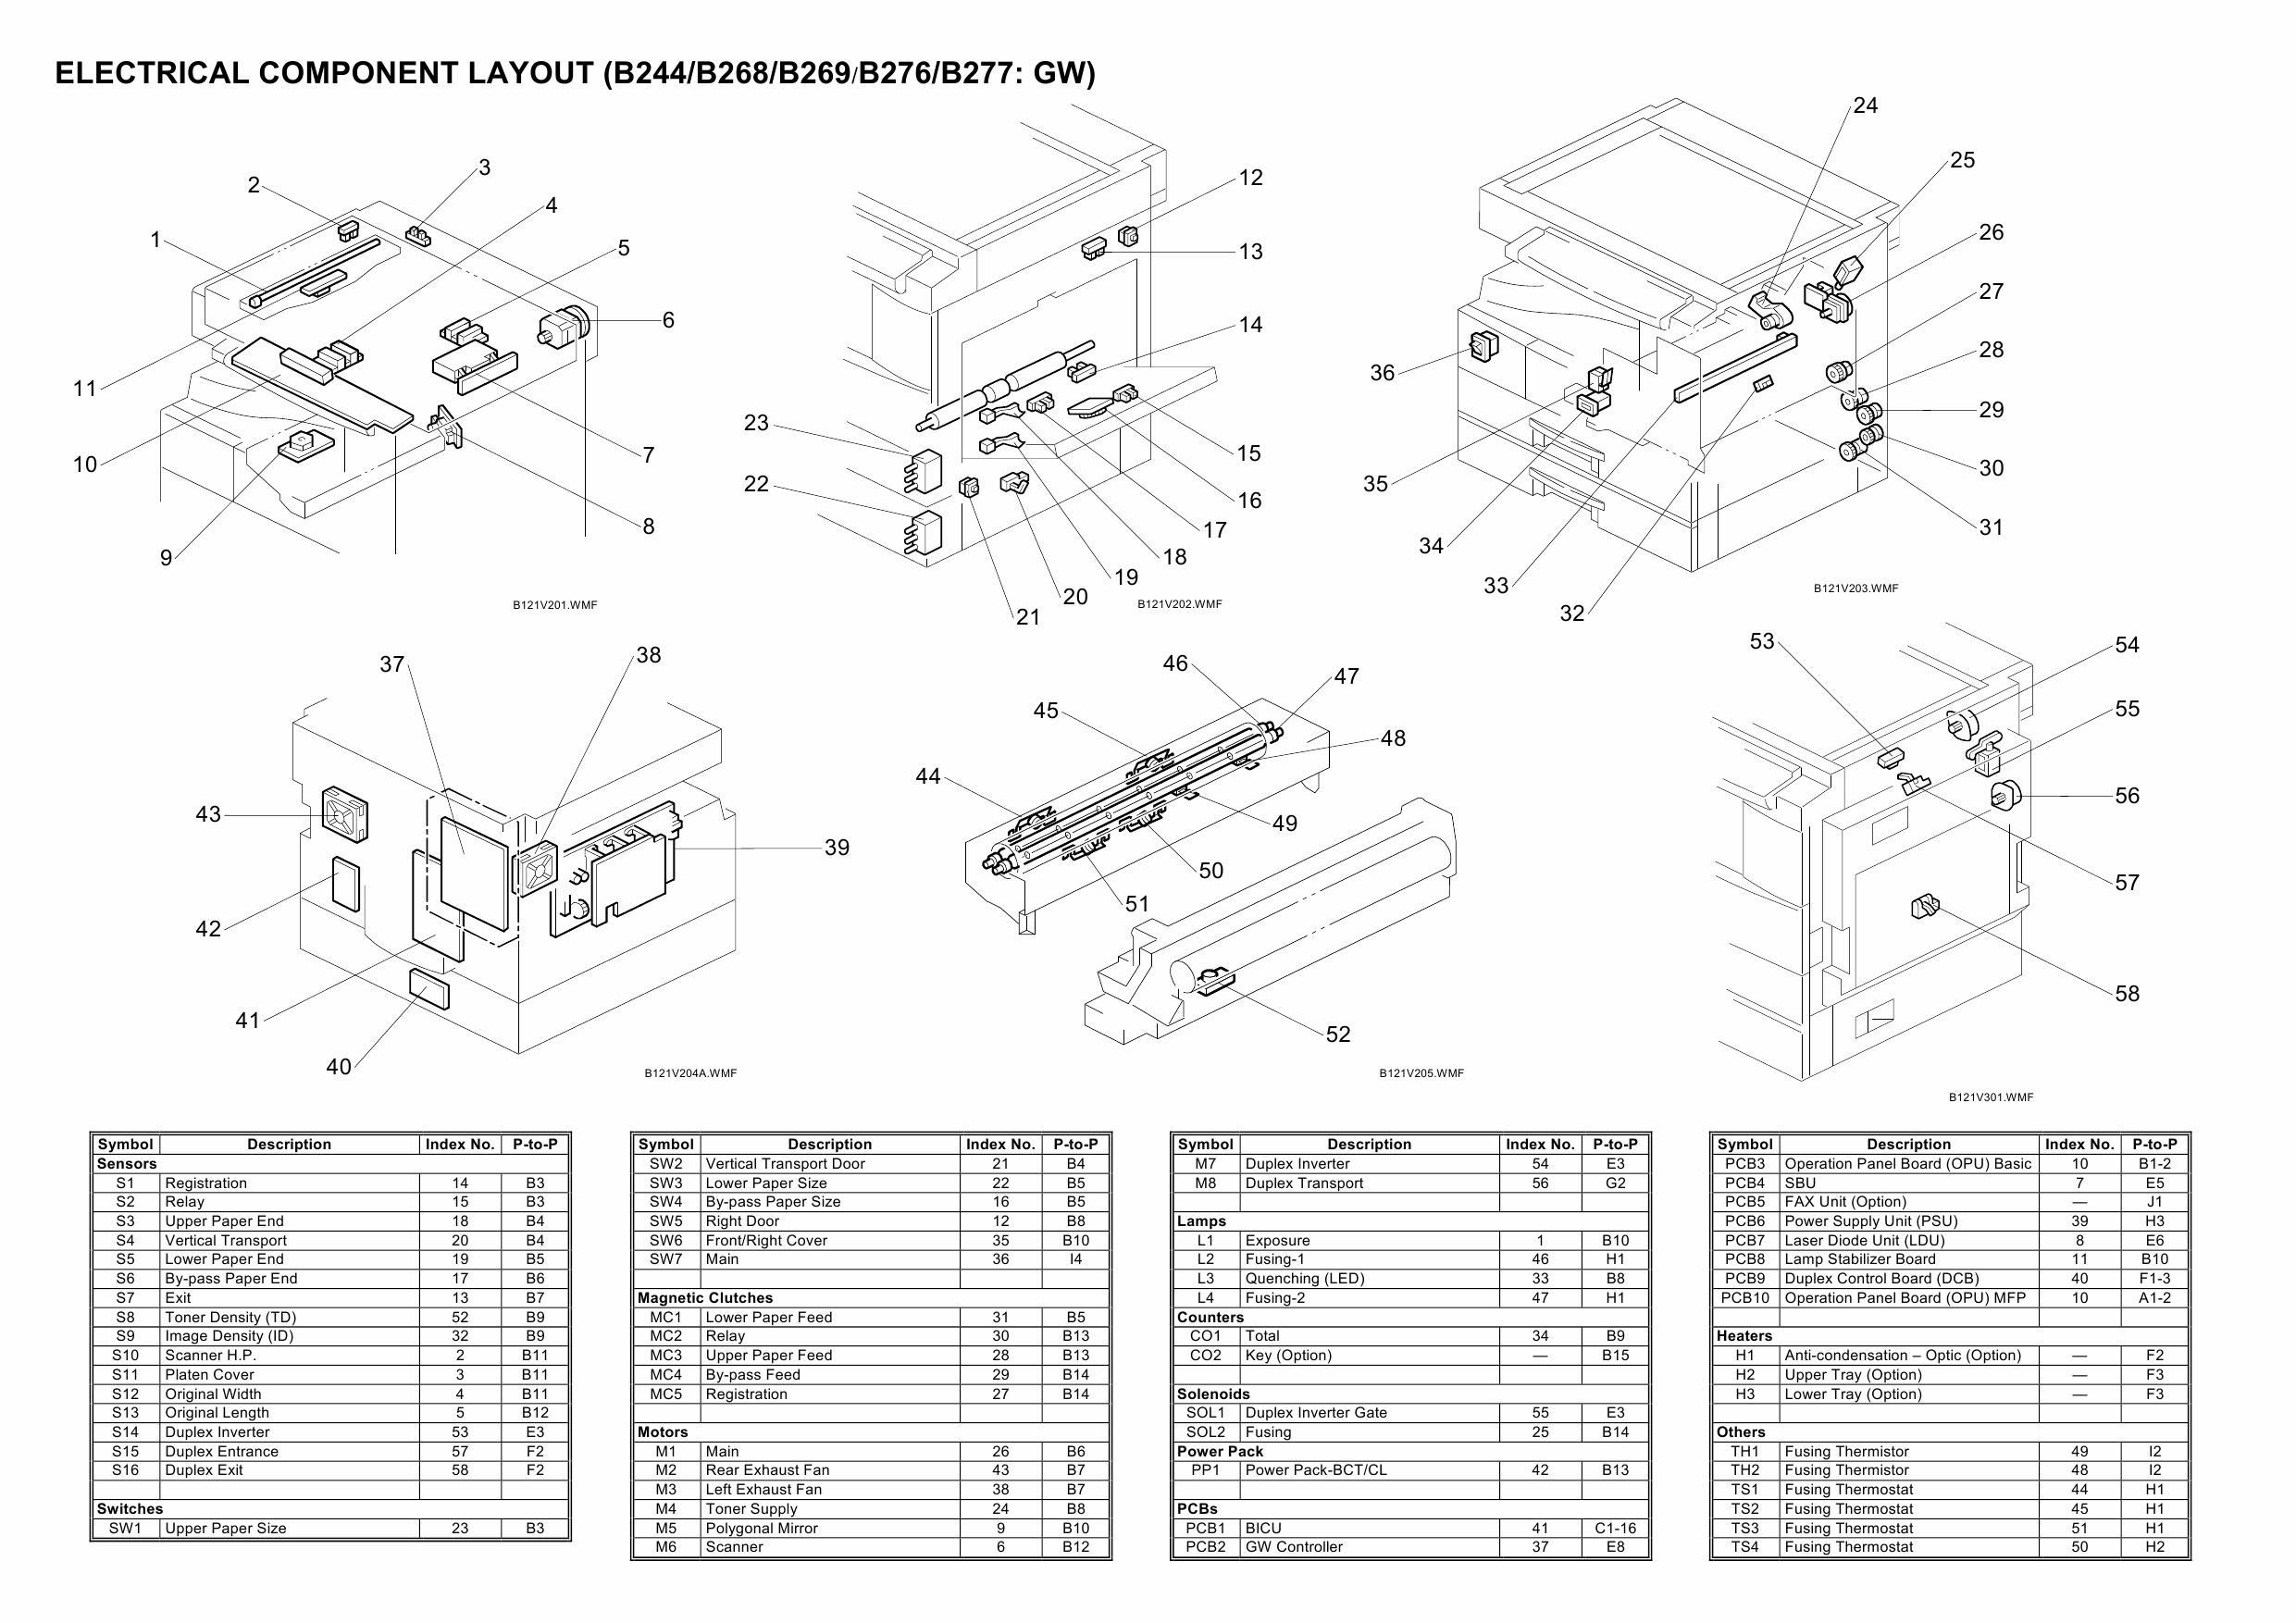 RICOH Aficio MP-1600L2 B244 B276 B277 B268 B269 Circuit Diagram-4